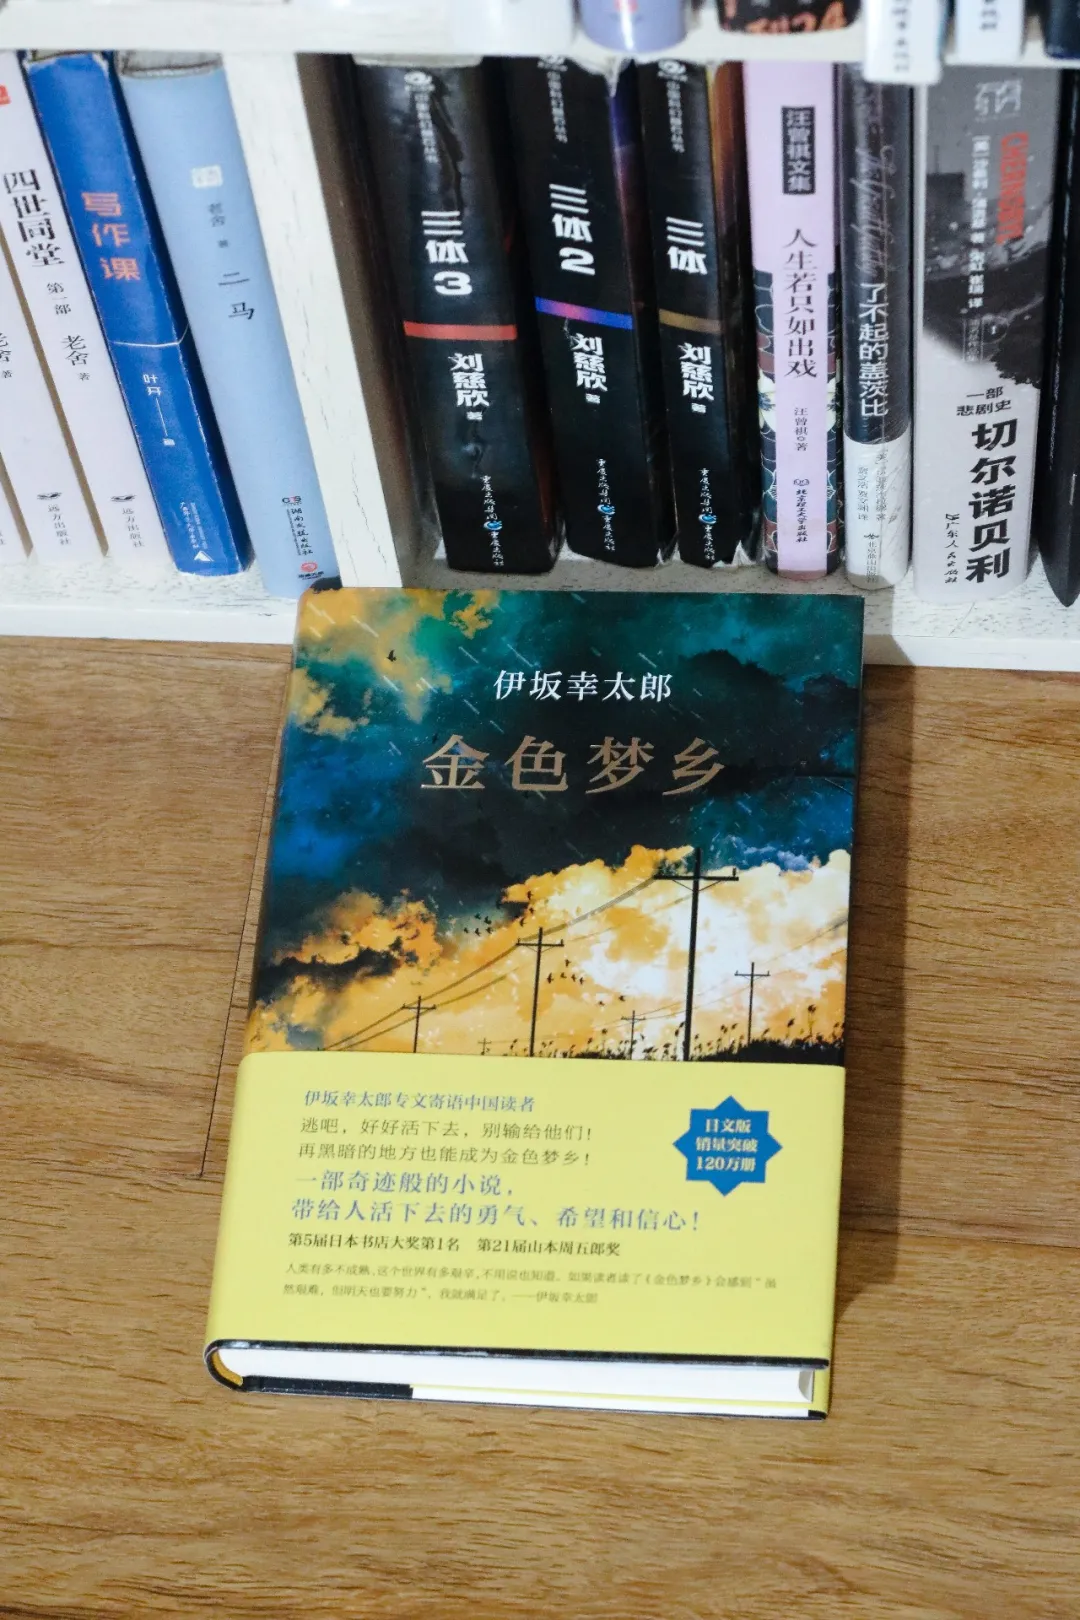 三月收到的5本赠书，都是名家名作：沈从文、迟子建、东野圭吾、伊坂幸太郎等